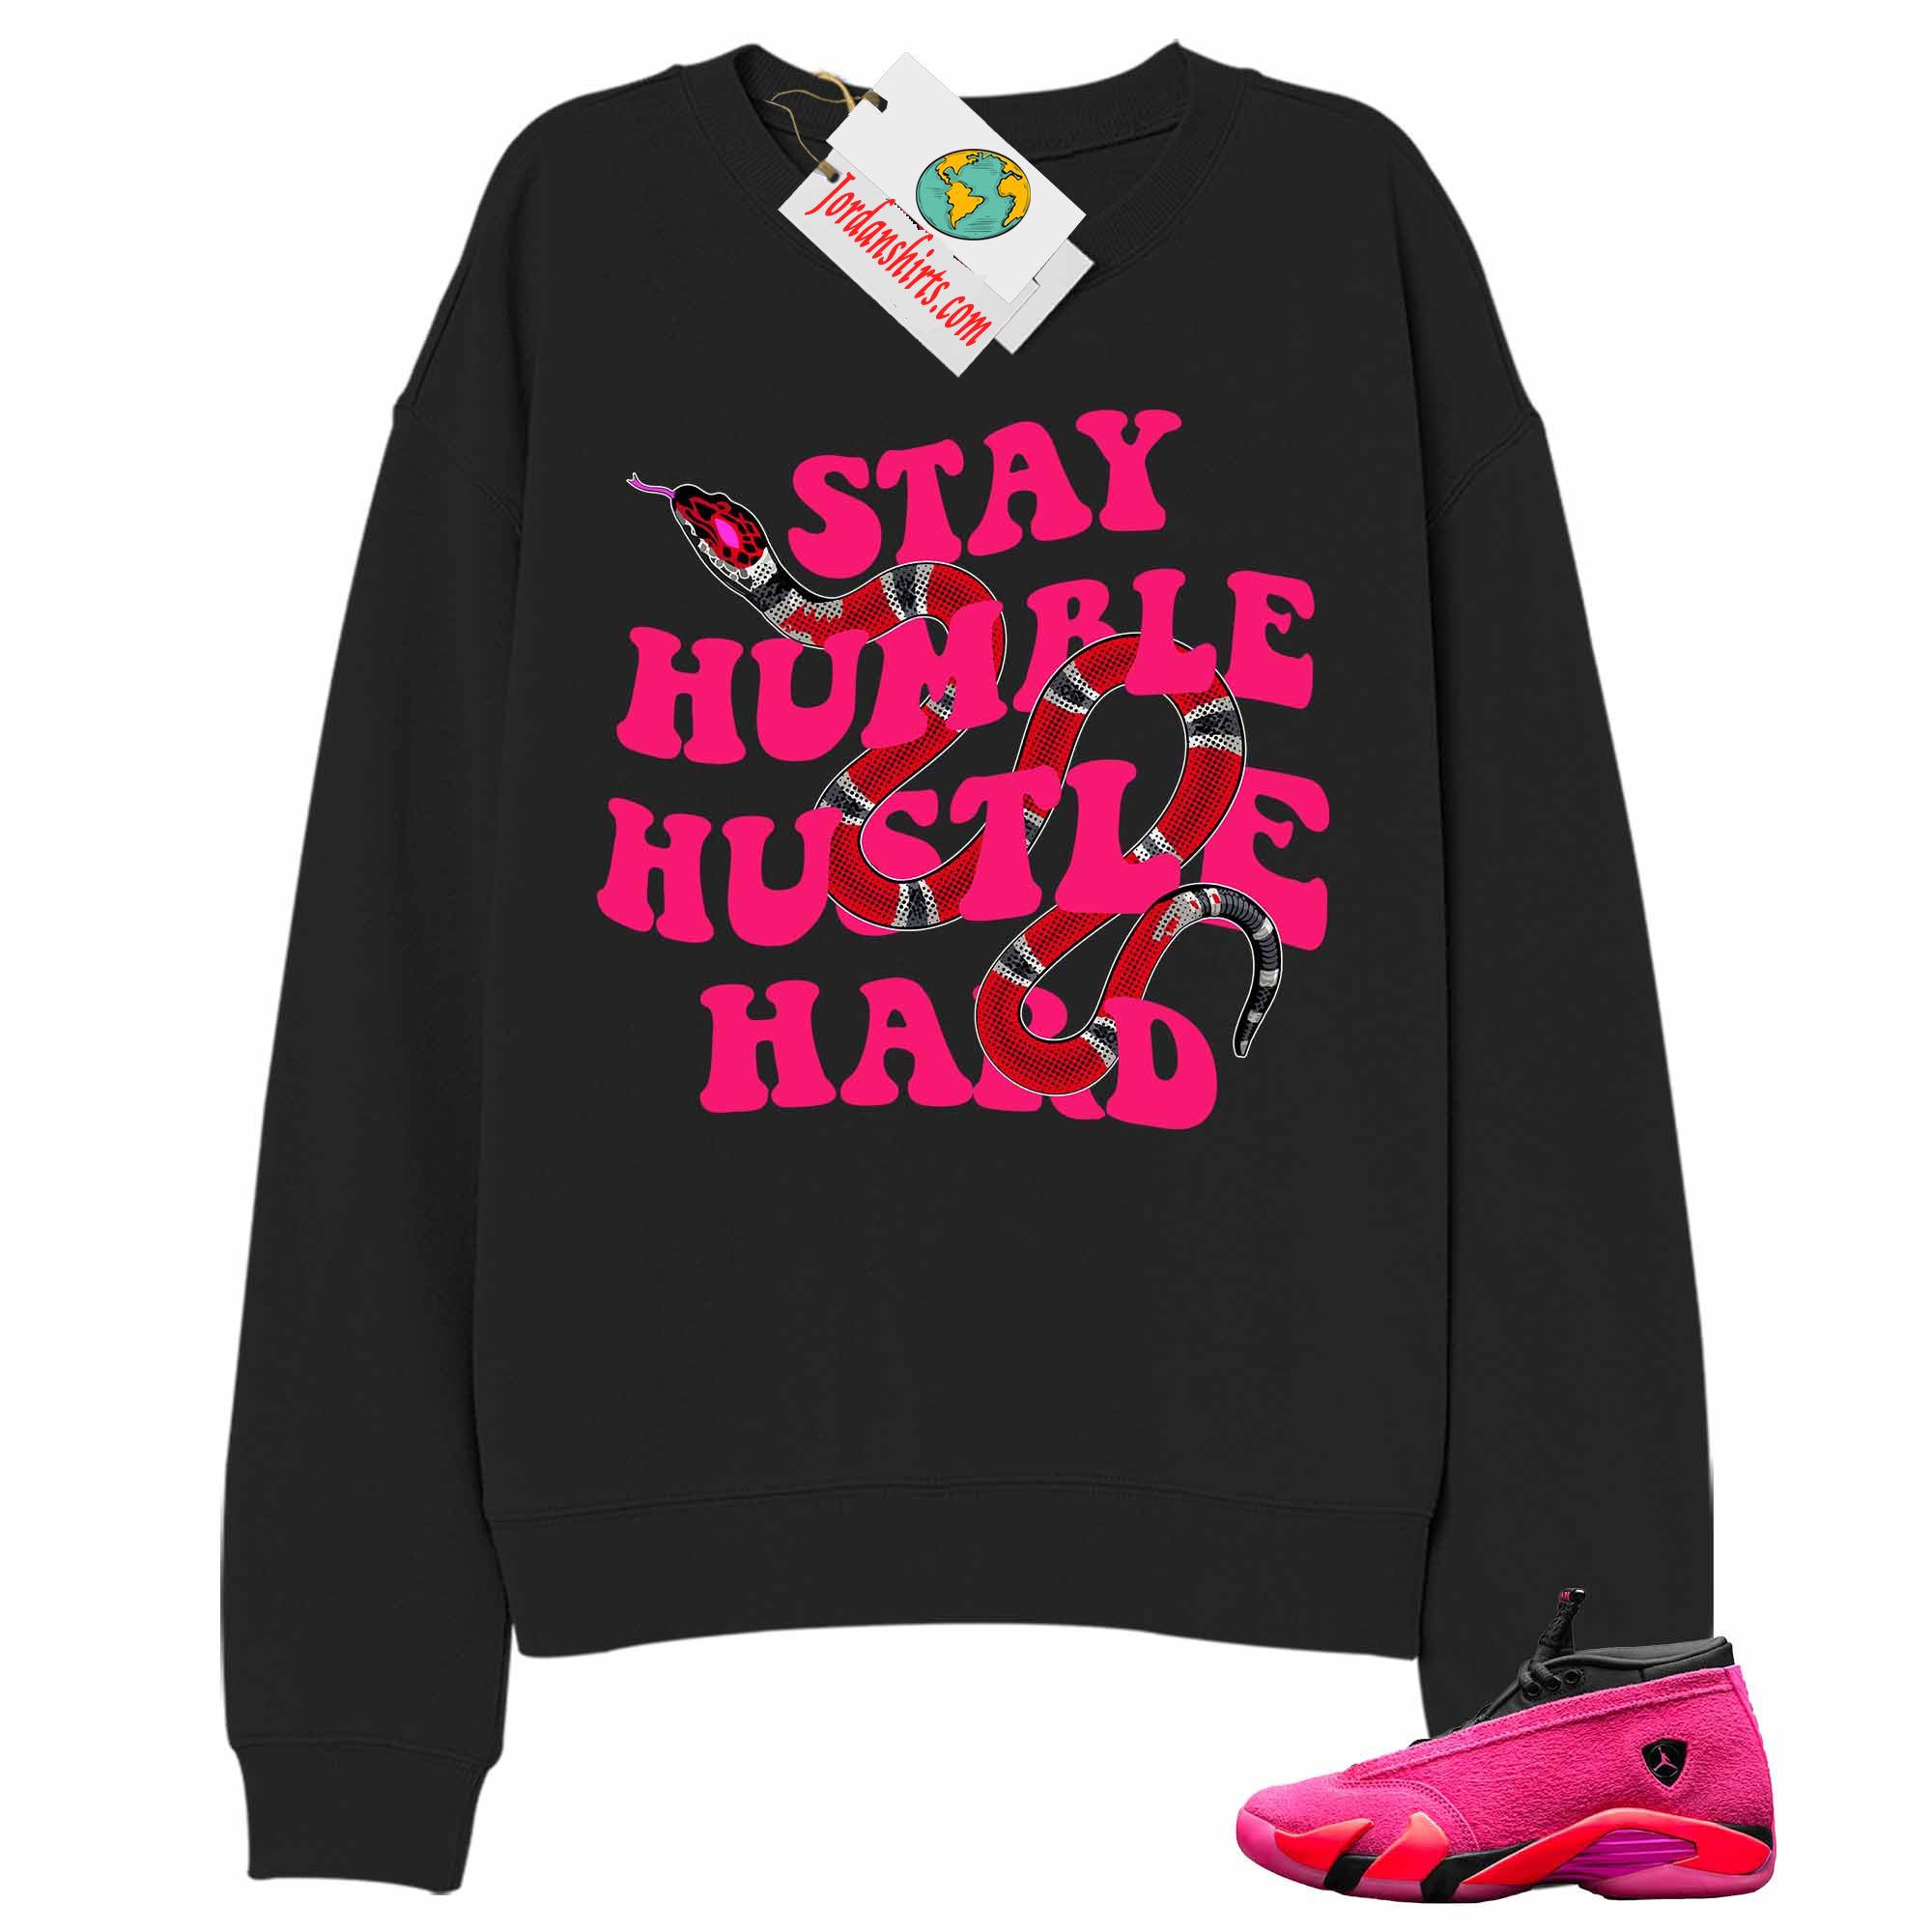 Jordan 14 Sweatshirt, Stay Humble Hustle Hard King Snake Black Sweatshirt Air Jordan 14 Wmns Shocking Pink 14s Full Size Up To 5xl